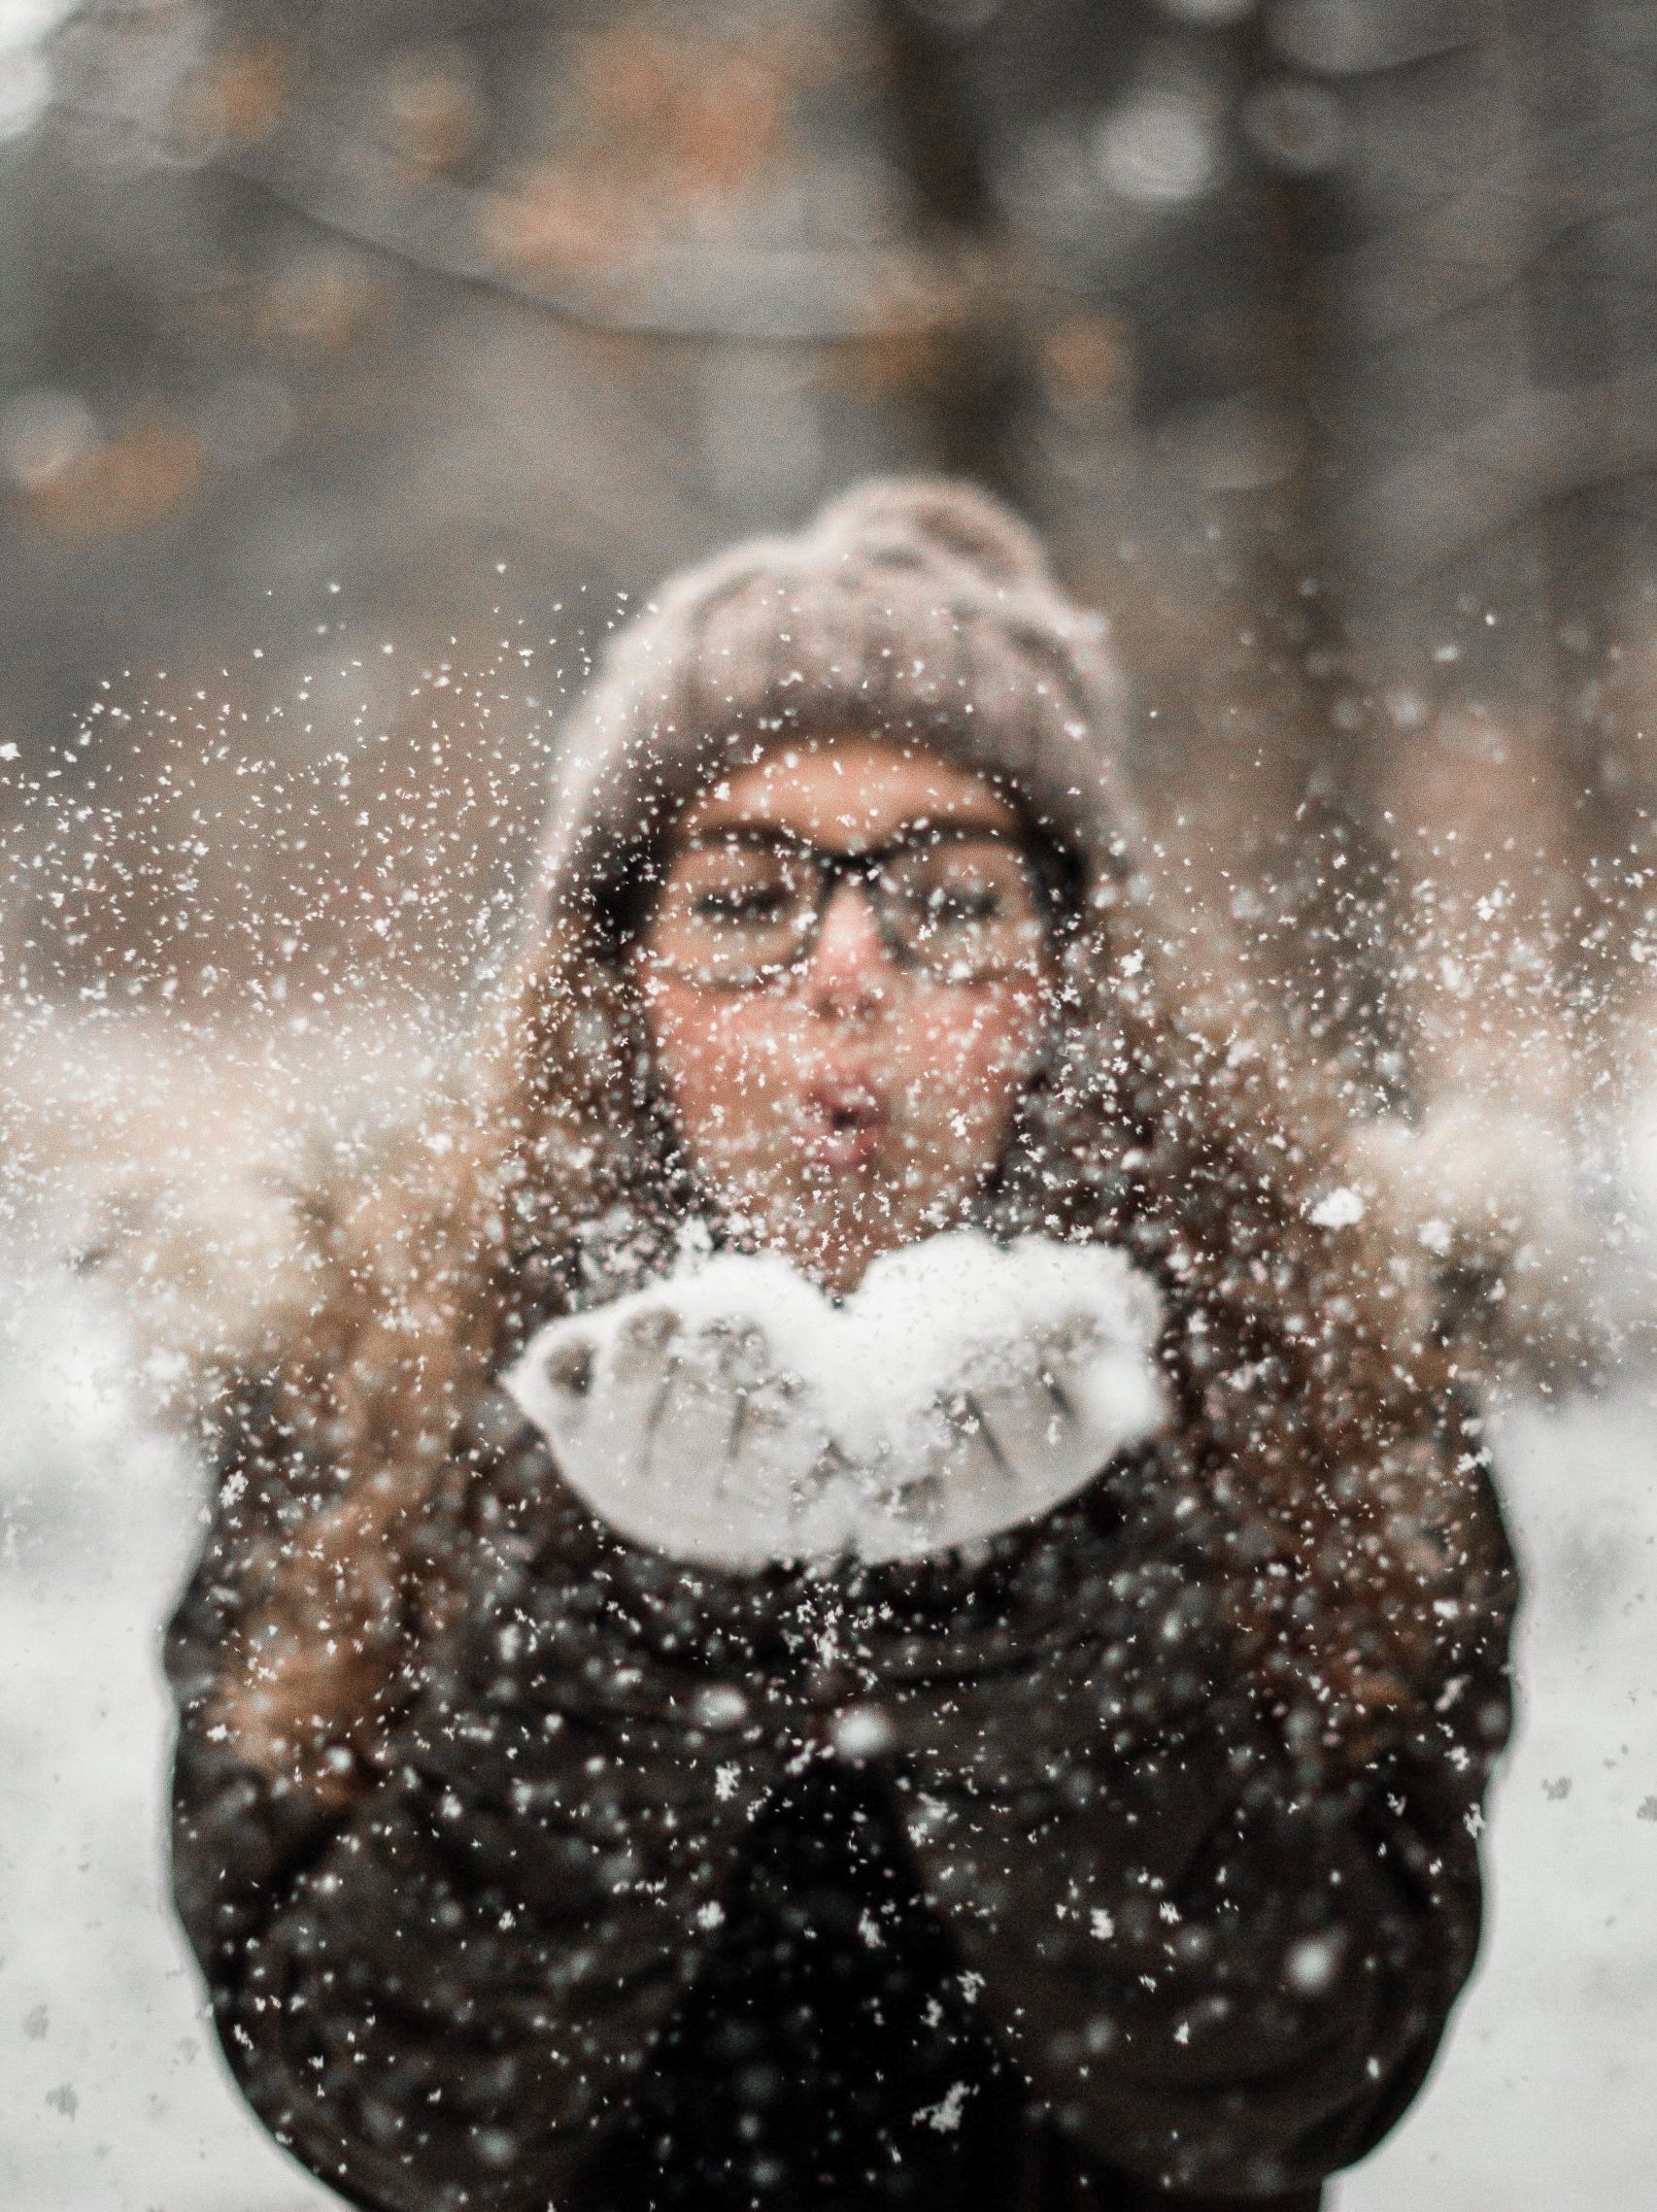 Henkilö puhaltaa lunta käsistään ilmaan. Hänellä on päässään mustasankaiset silmälasit ja ruskea pehmeän näköinen pipo, missä on tupsu. Taustalla näkyy talvisia puita. Avainsanoja: talvi, loma, hiihtoloma, talviloma, ilo, lumi